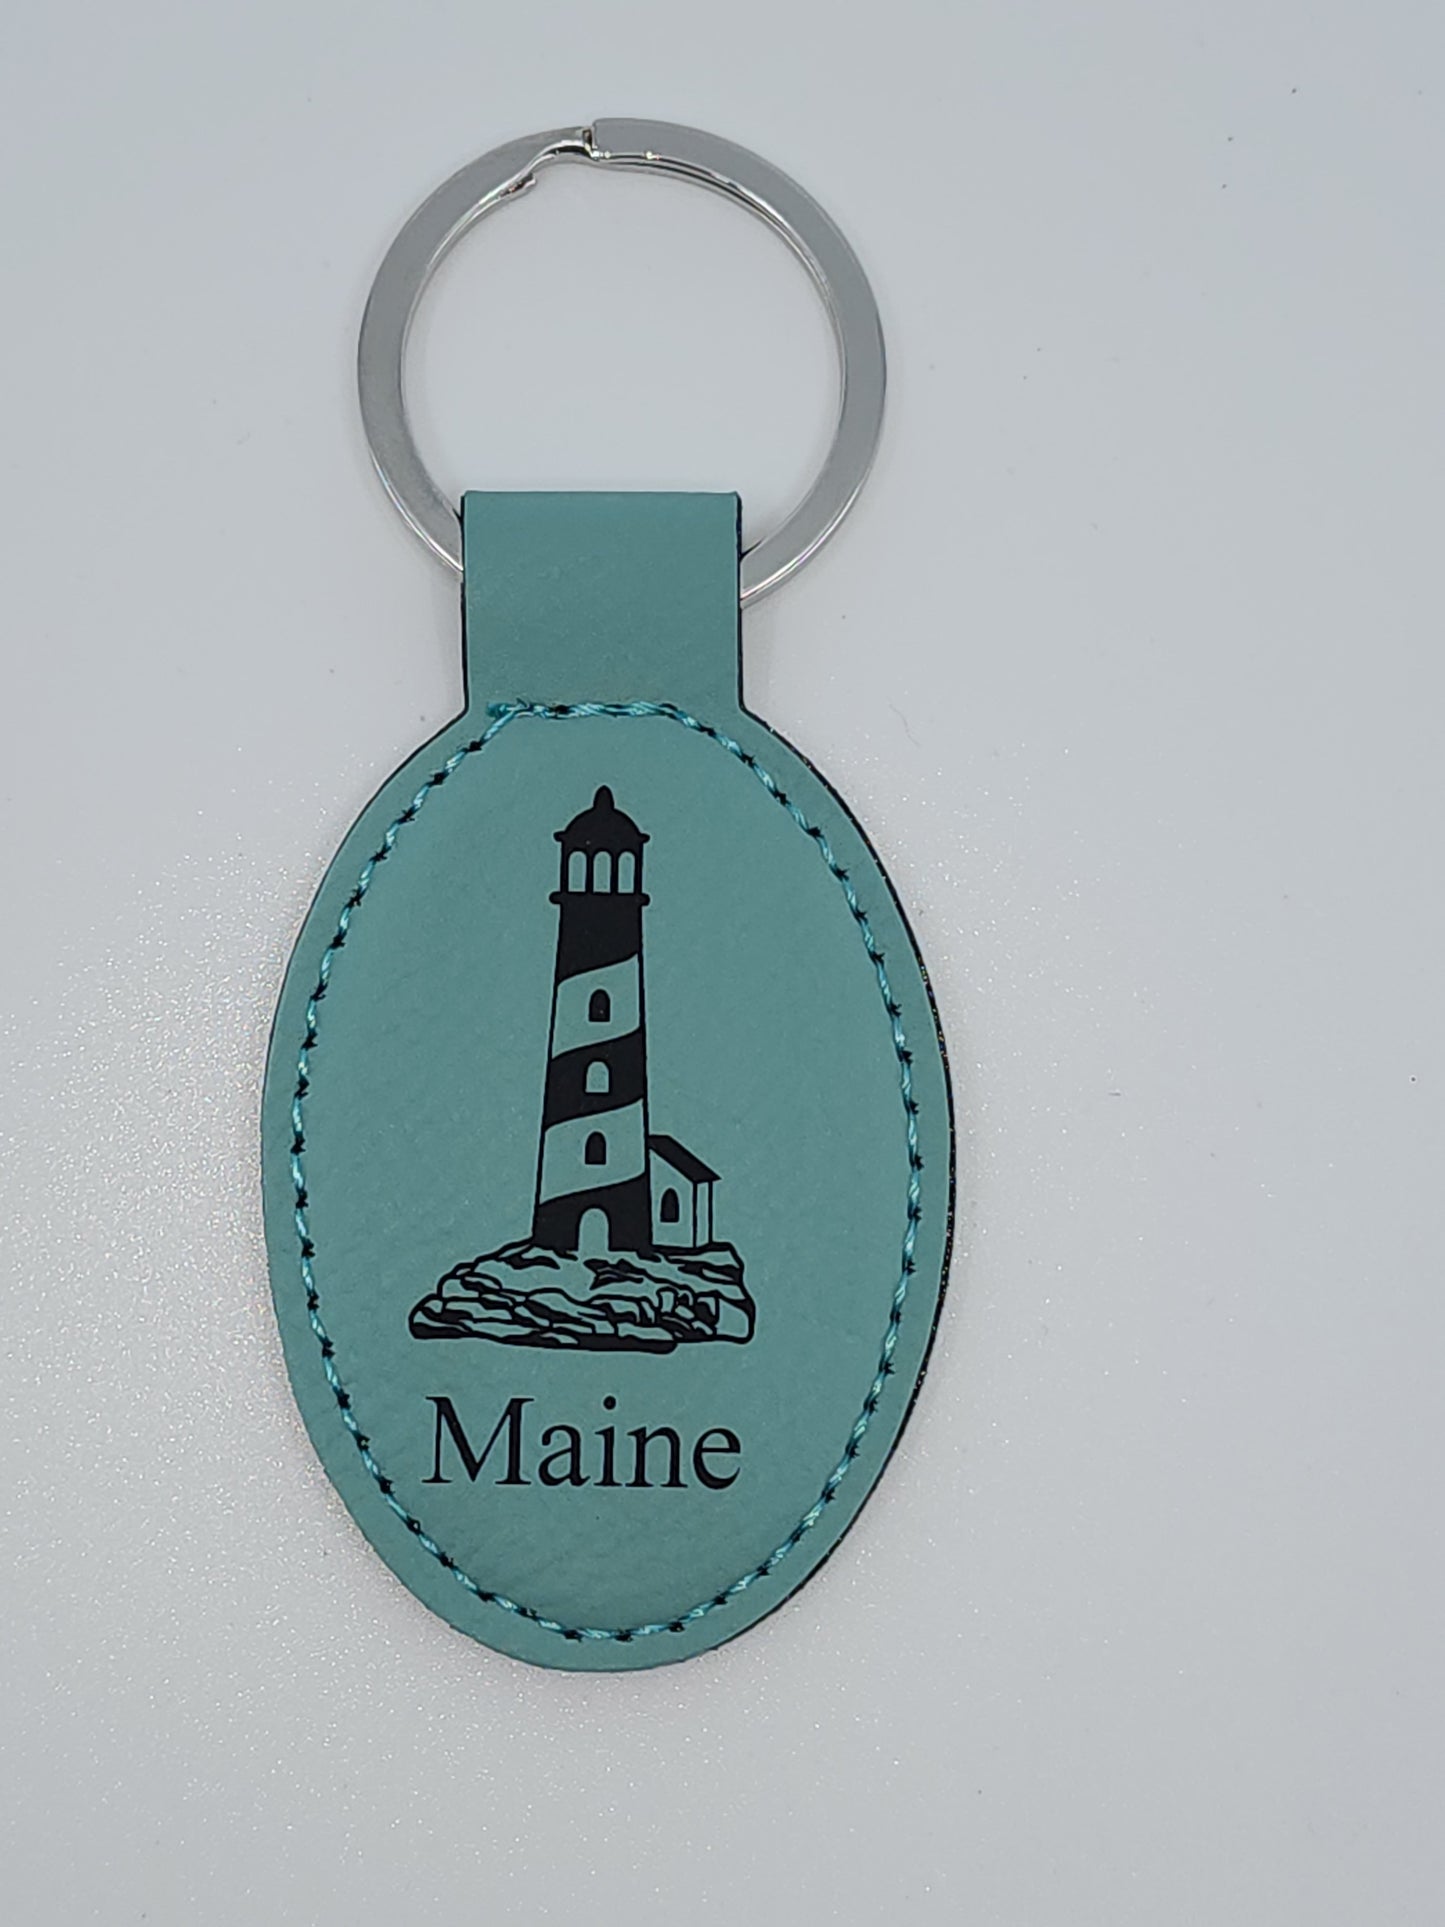 Maine Lighthouse Keychain - Teal Leather